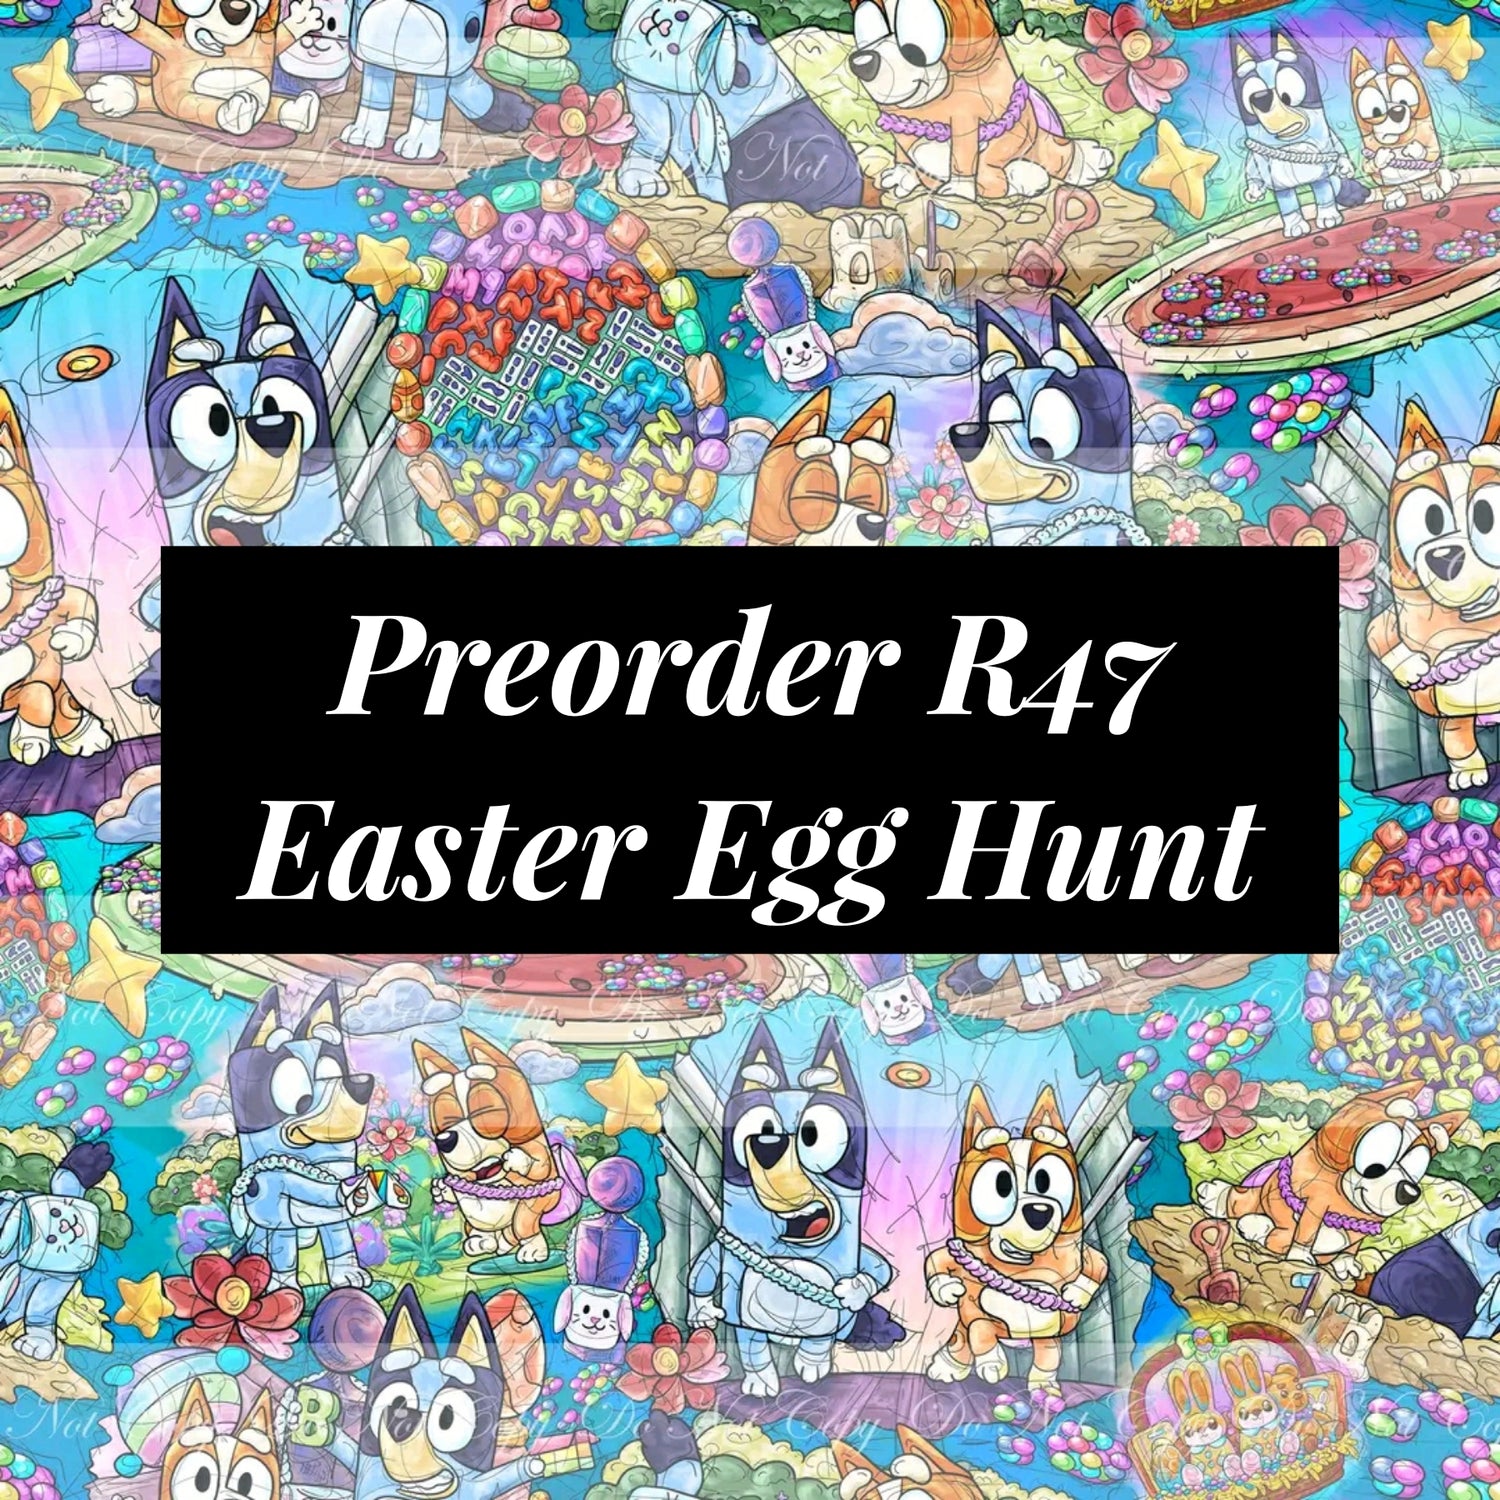 Preorder R47 Easter Egg Hunt